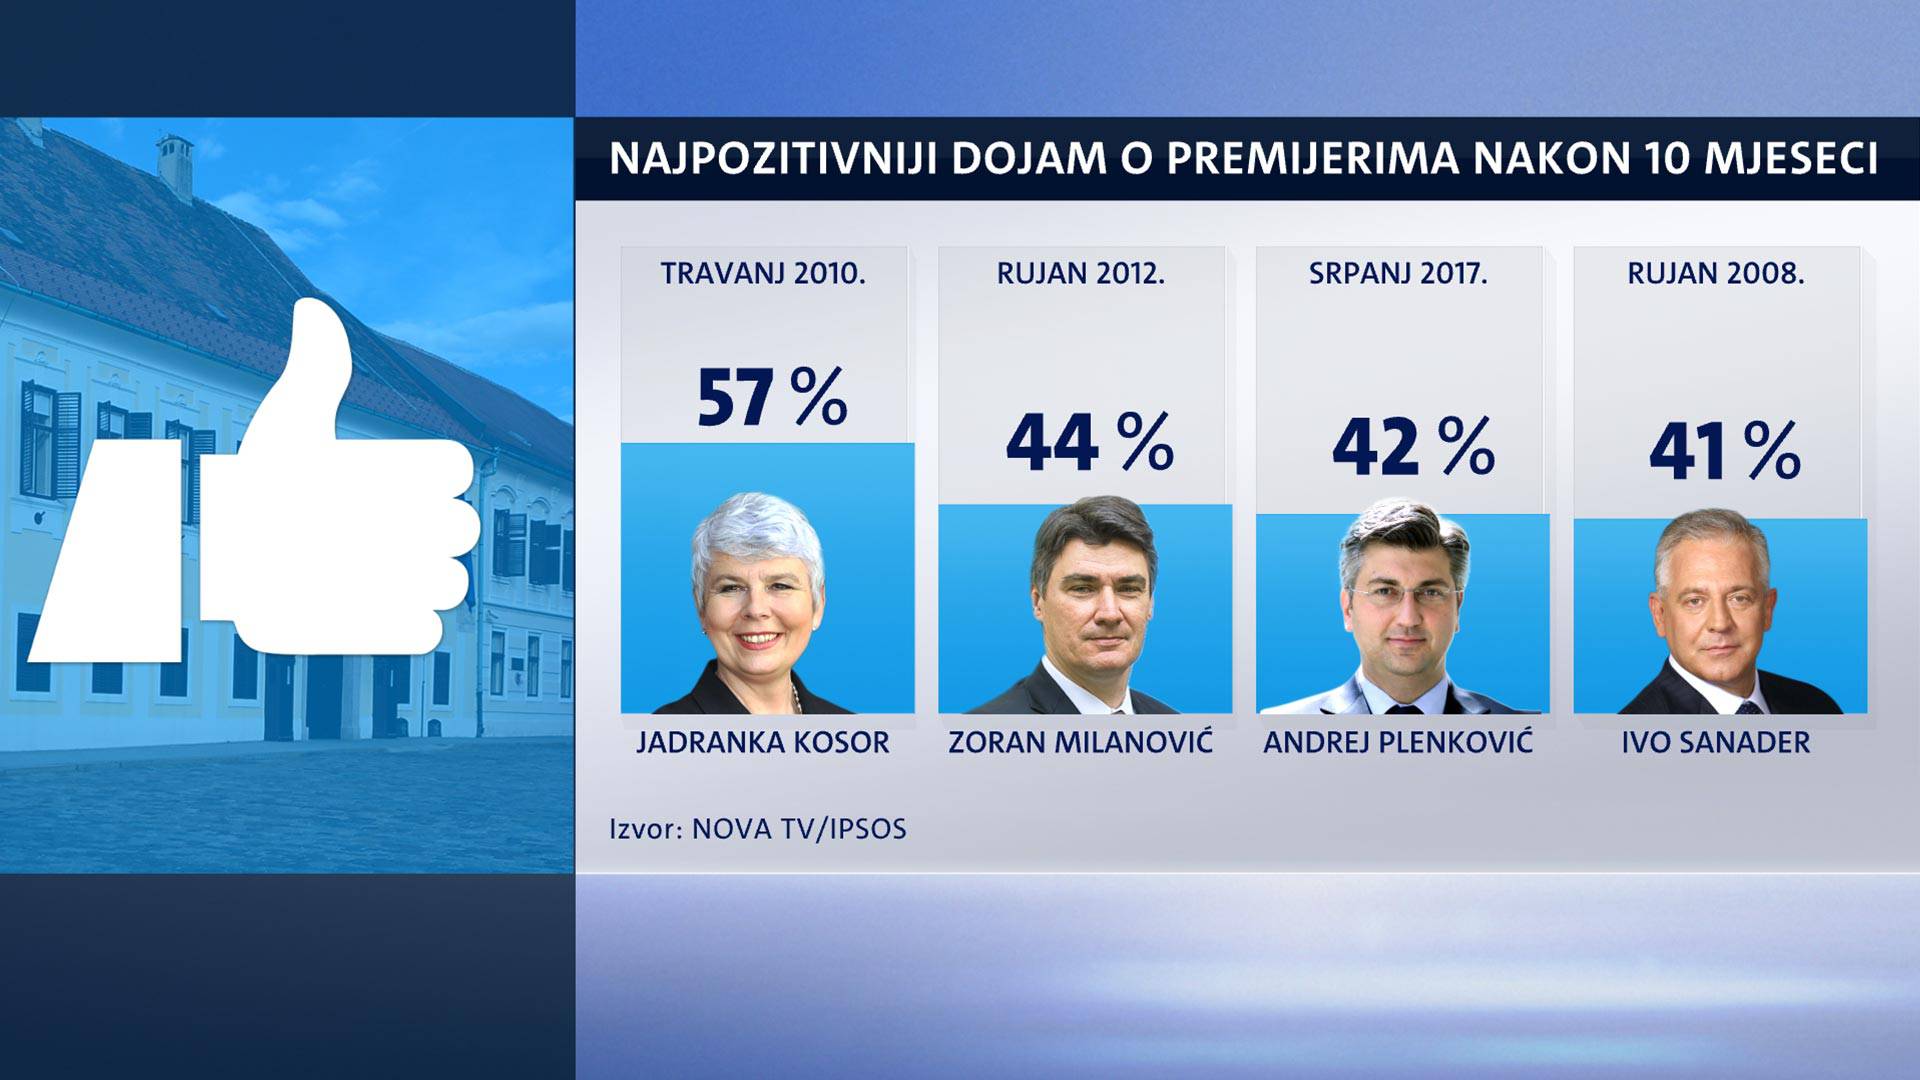 Podrška Kolindi raste, ali još uvijek nije na razini Josipovića